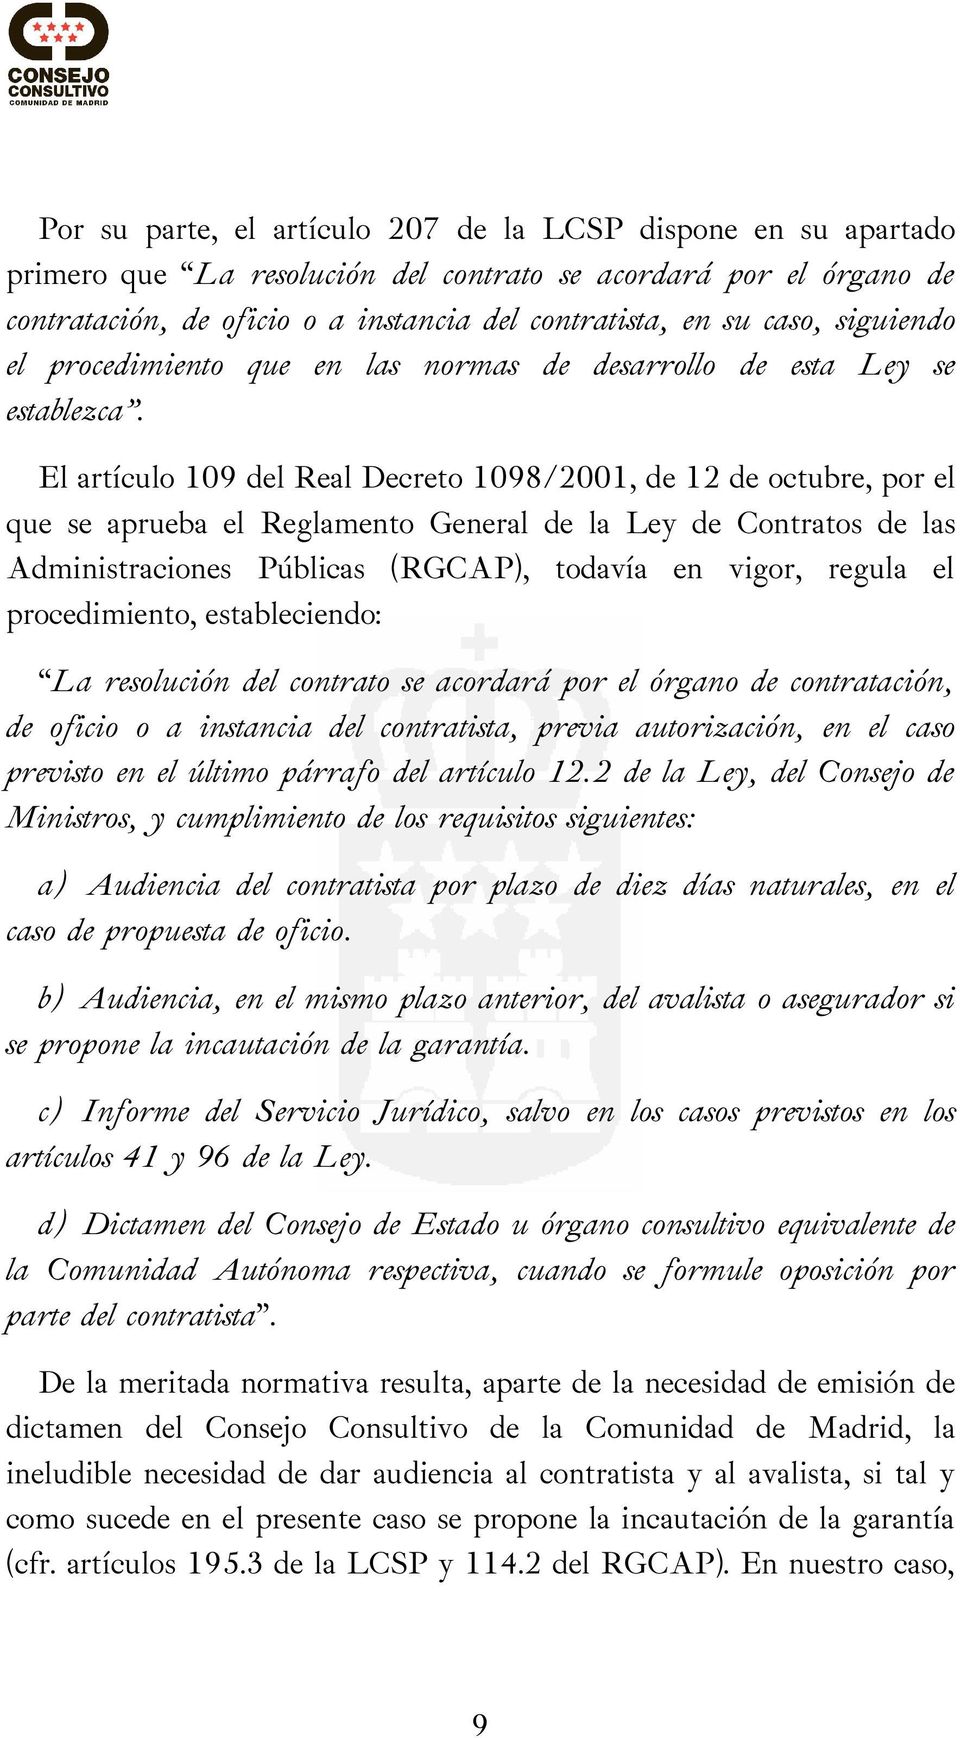 El artículo 109 del Real Decreto 1098/2001, de 12 de octubre, por el que se aprueba el Reglamento General de la Ley de Contratos de las Administraciones Públicas (RGCAP), todavía en vigor, regula el